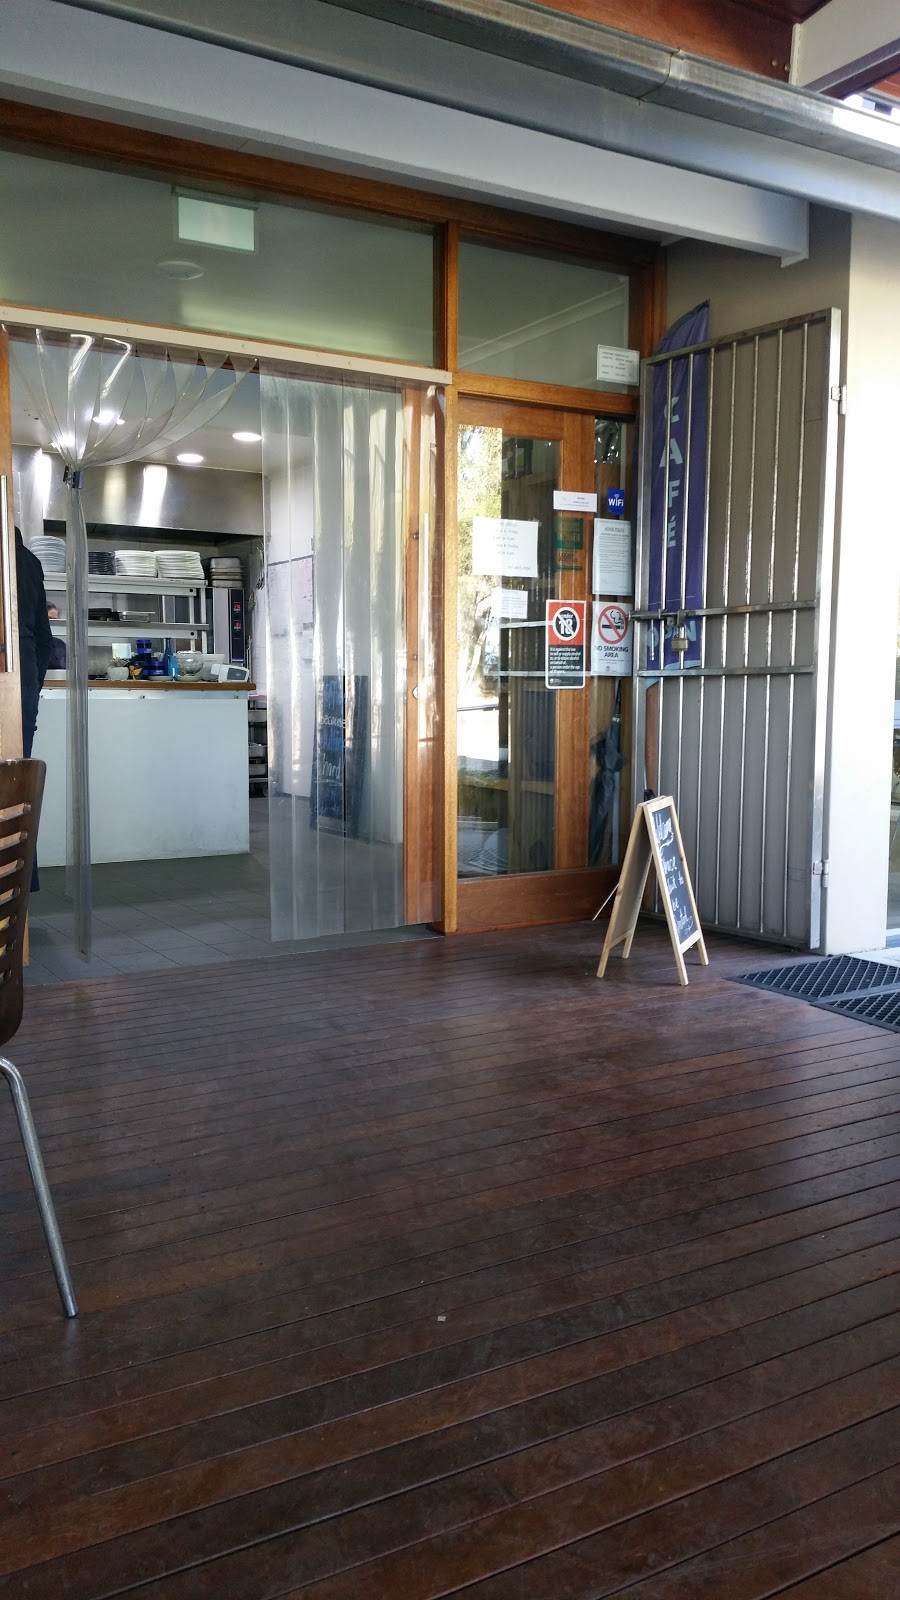 Wangi Deck Cafe | cafe | 242 Watkins Rd, Wangi Wangi NSW 2267, Australia | 0249754354 OR +61 2 4975 4354